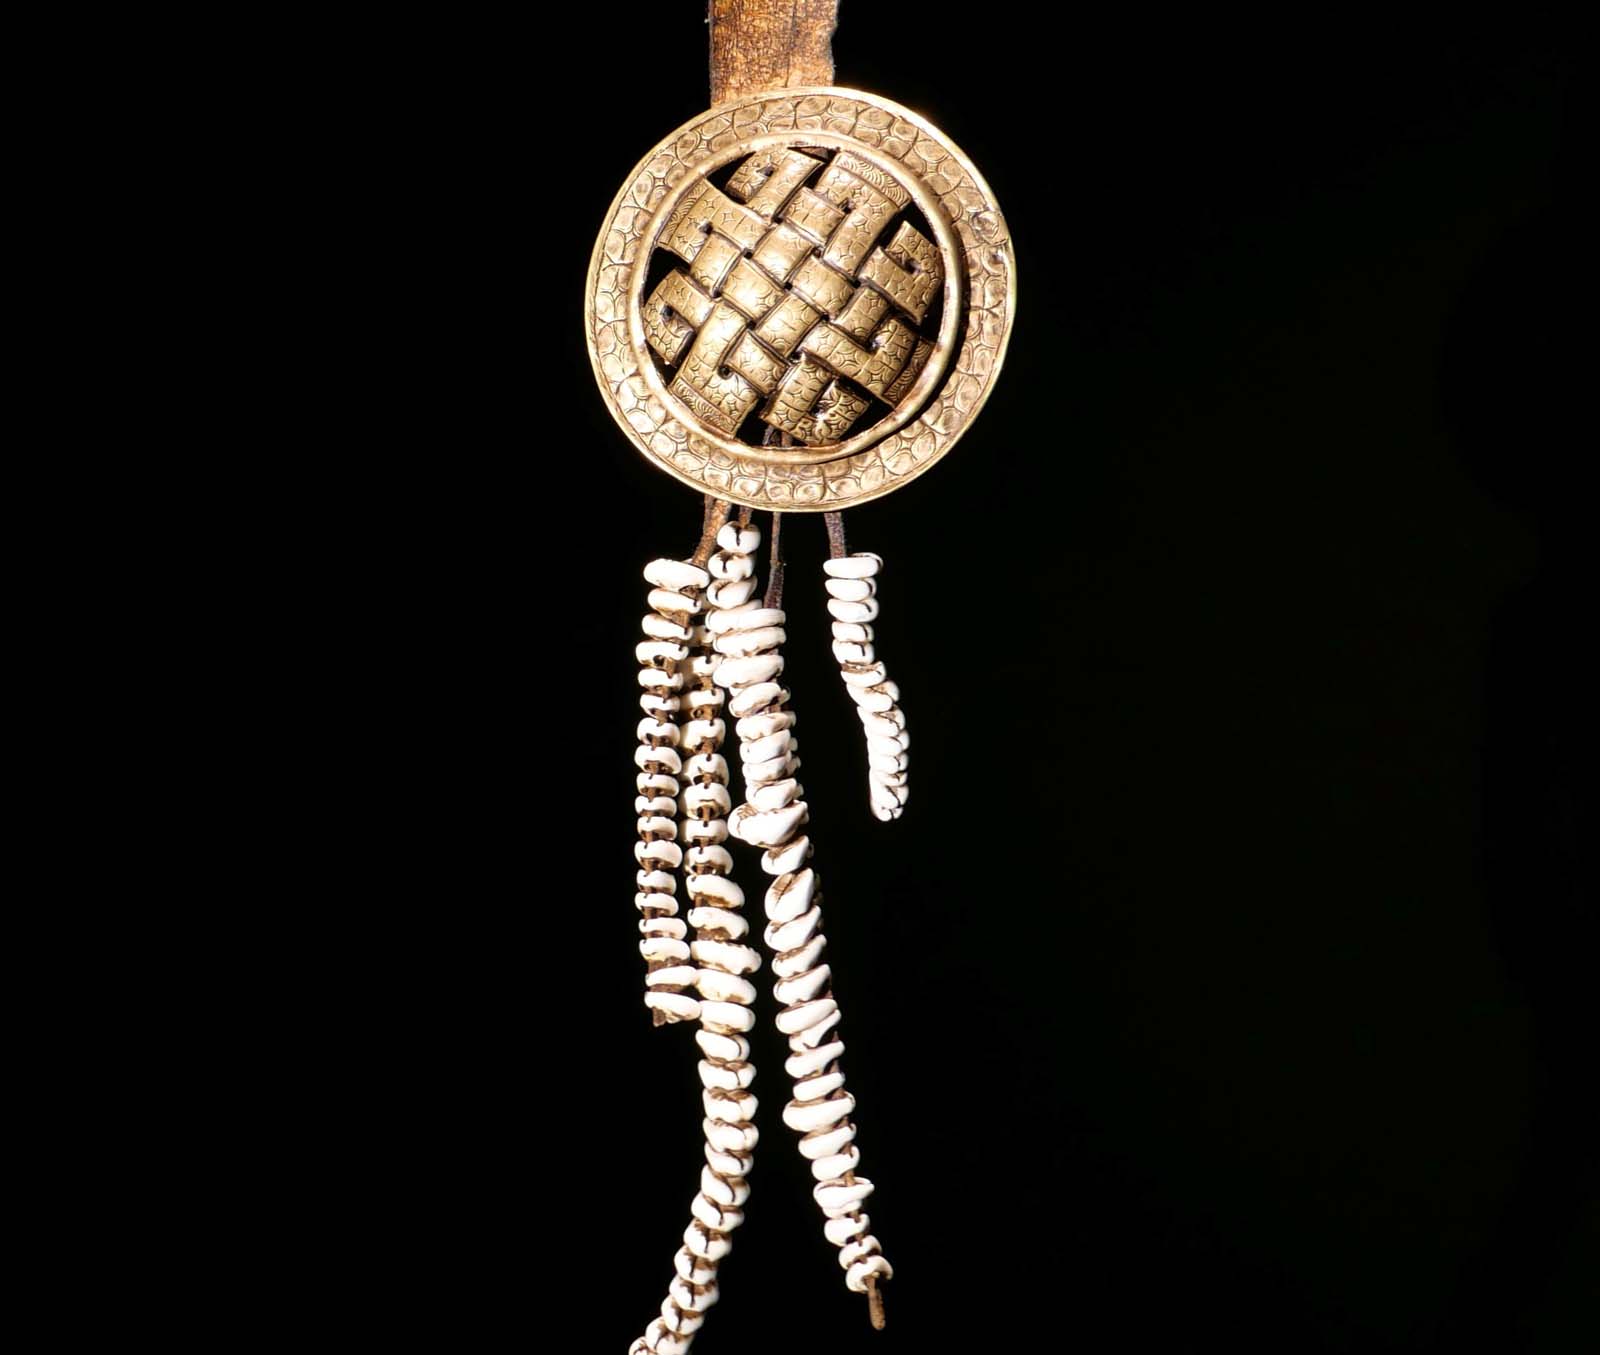 Gürtelschmuck „Ewiger Knoten“ Bronzescheibe an Lederband, Kauri-Anhänger. Mitte 20. Jhdt. Ladakh / Zanskar. H 47 cm. 400.- €